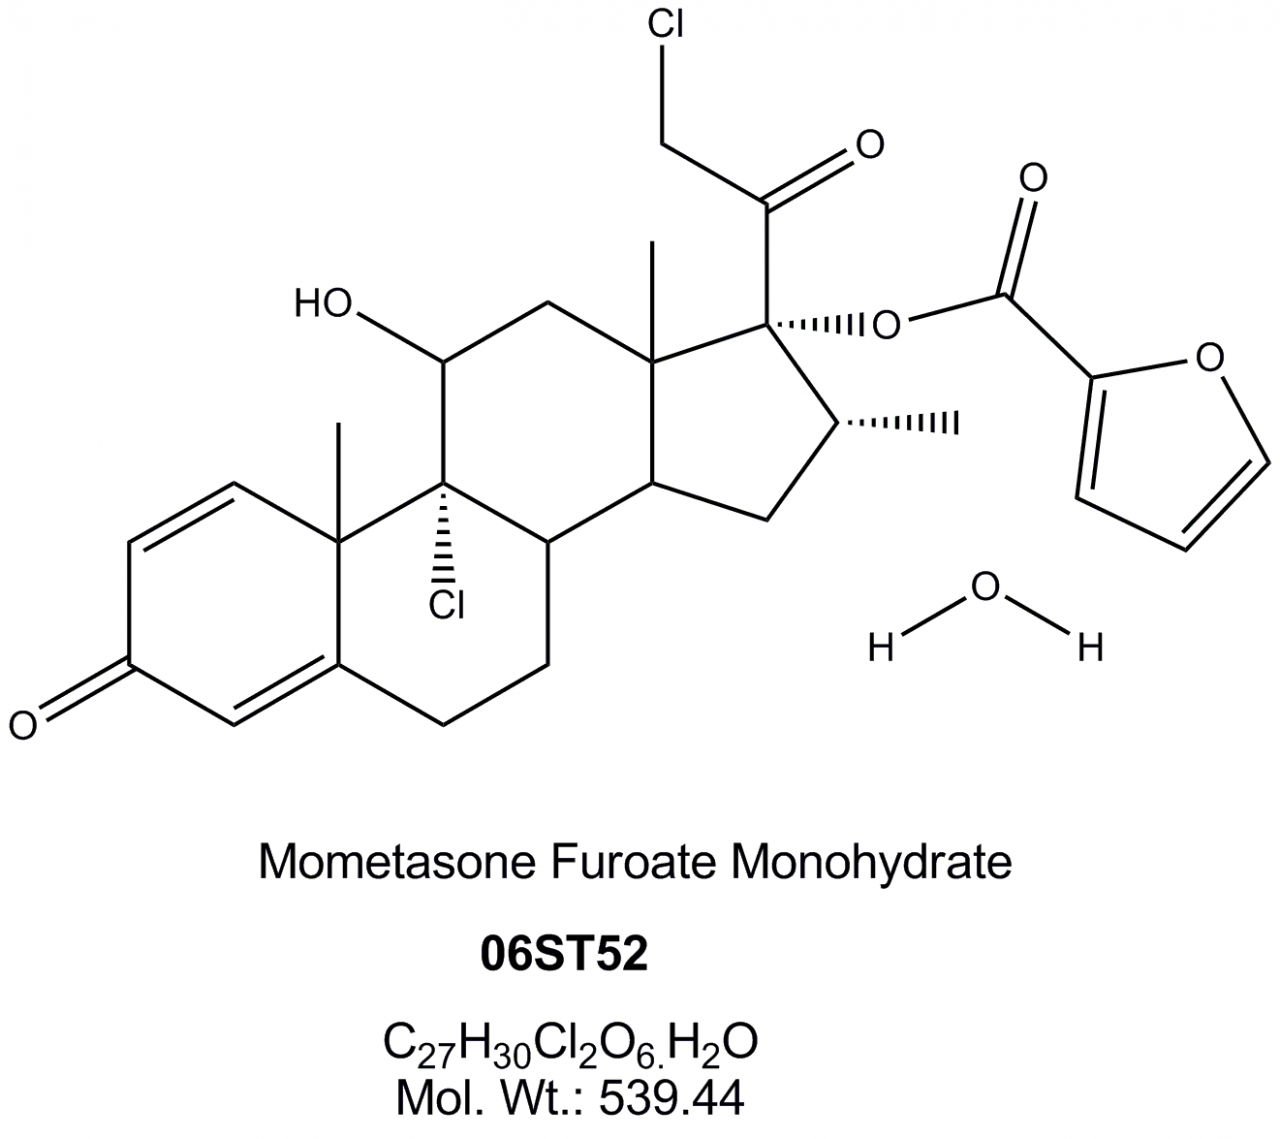 Mometasone Furoate Monohydrate | Hovione